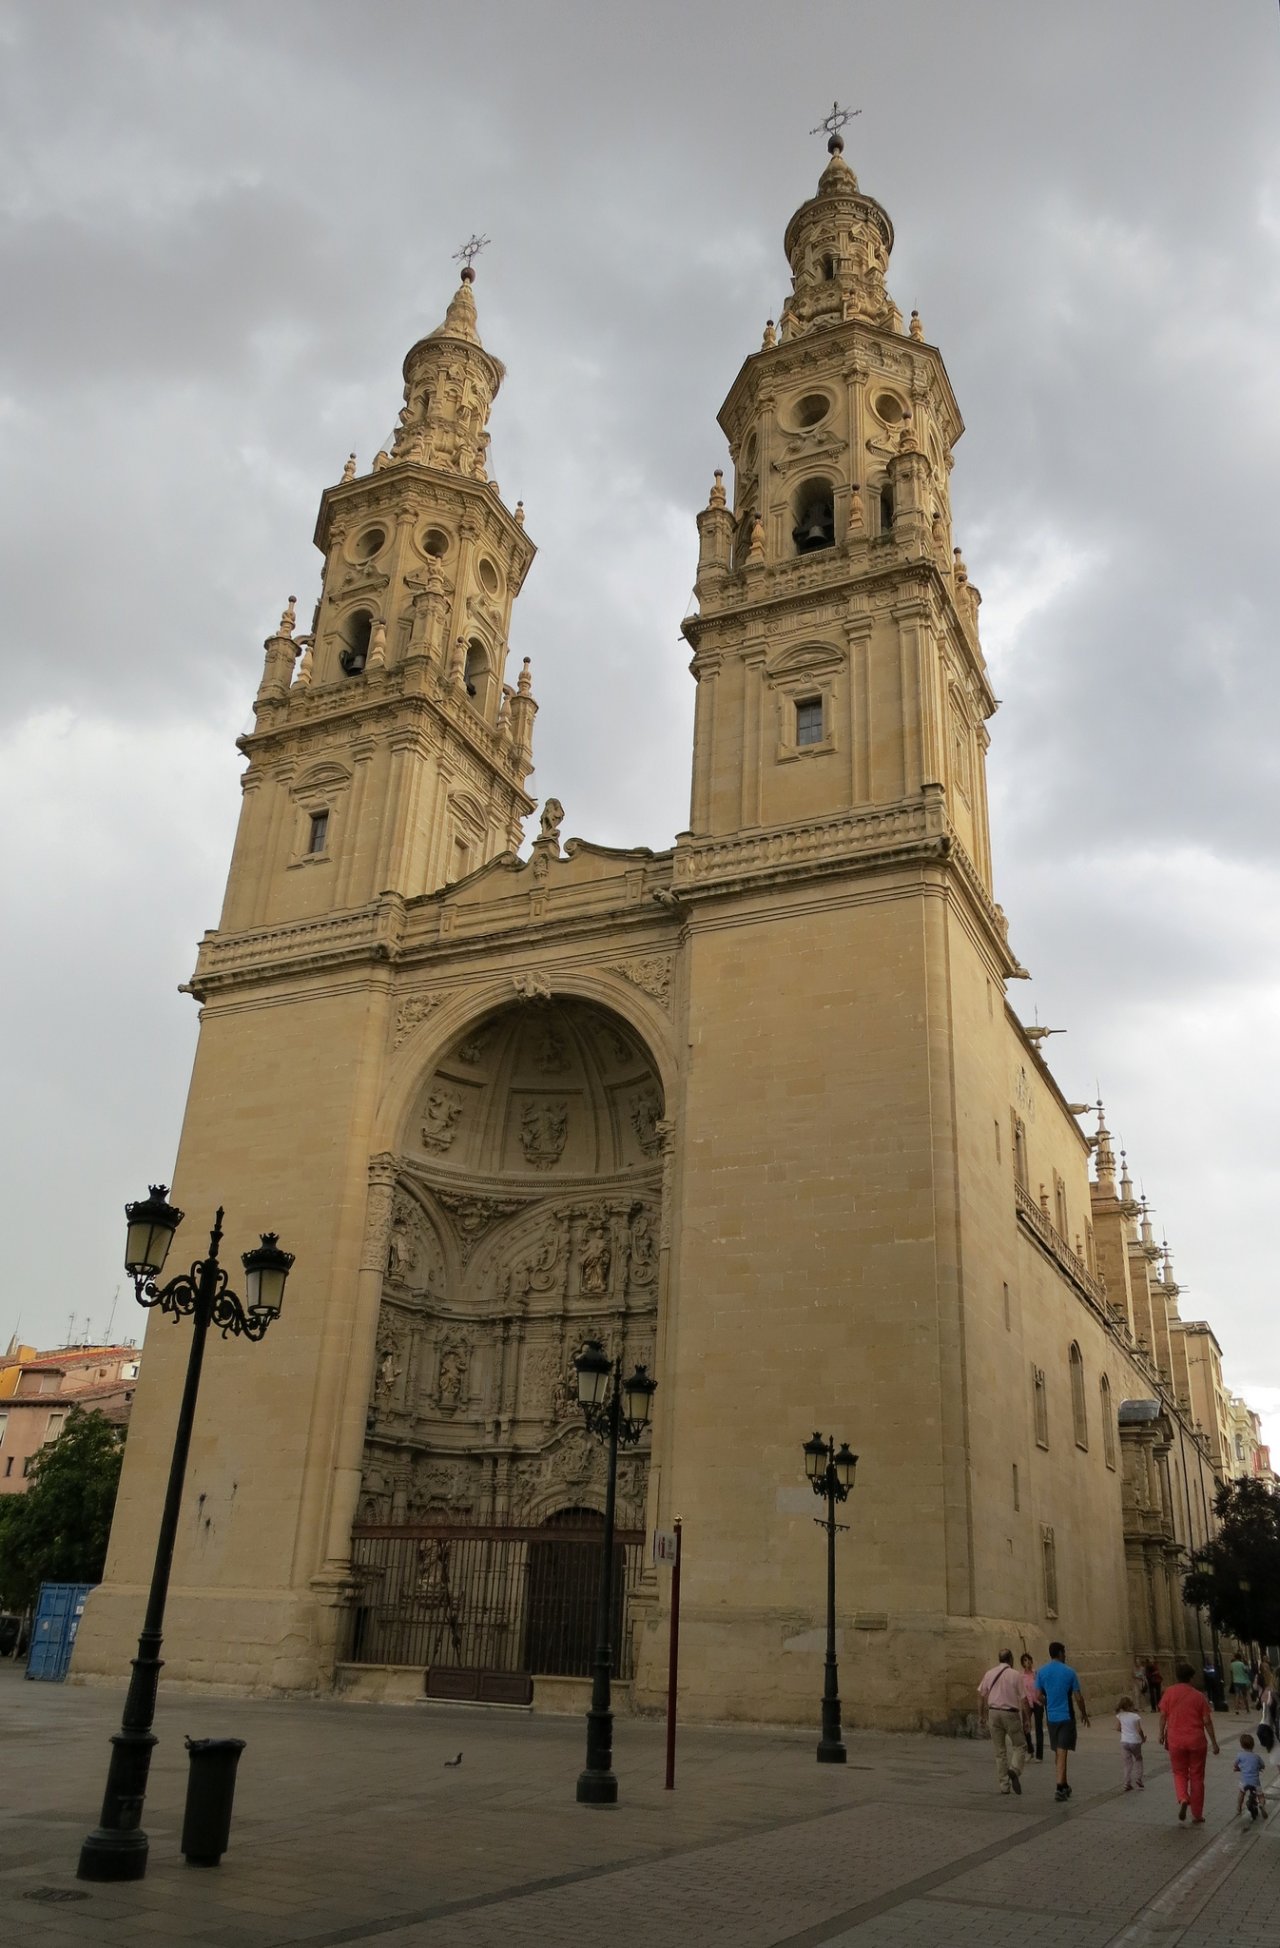 Cathedral of Santa Maria de la Redonda in Logrono, Cities in Spain